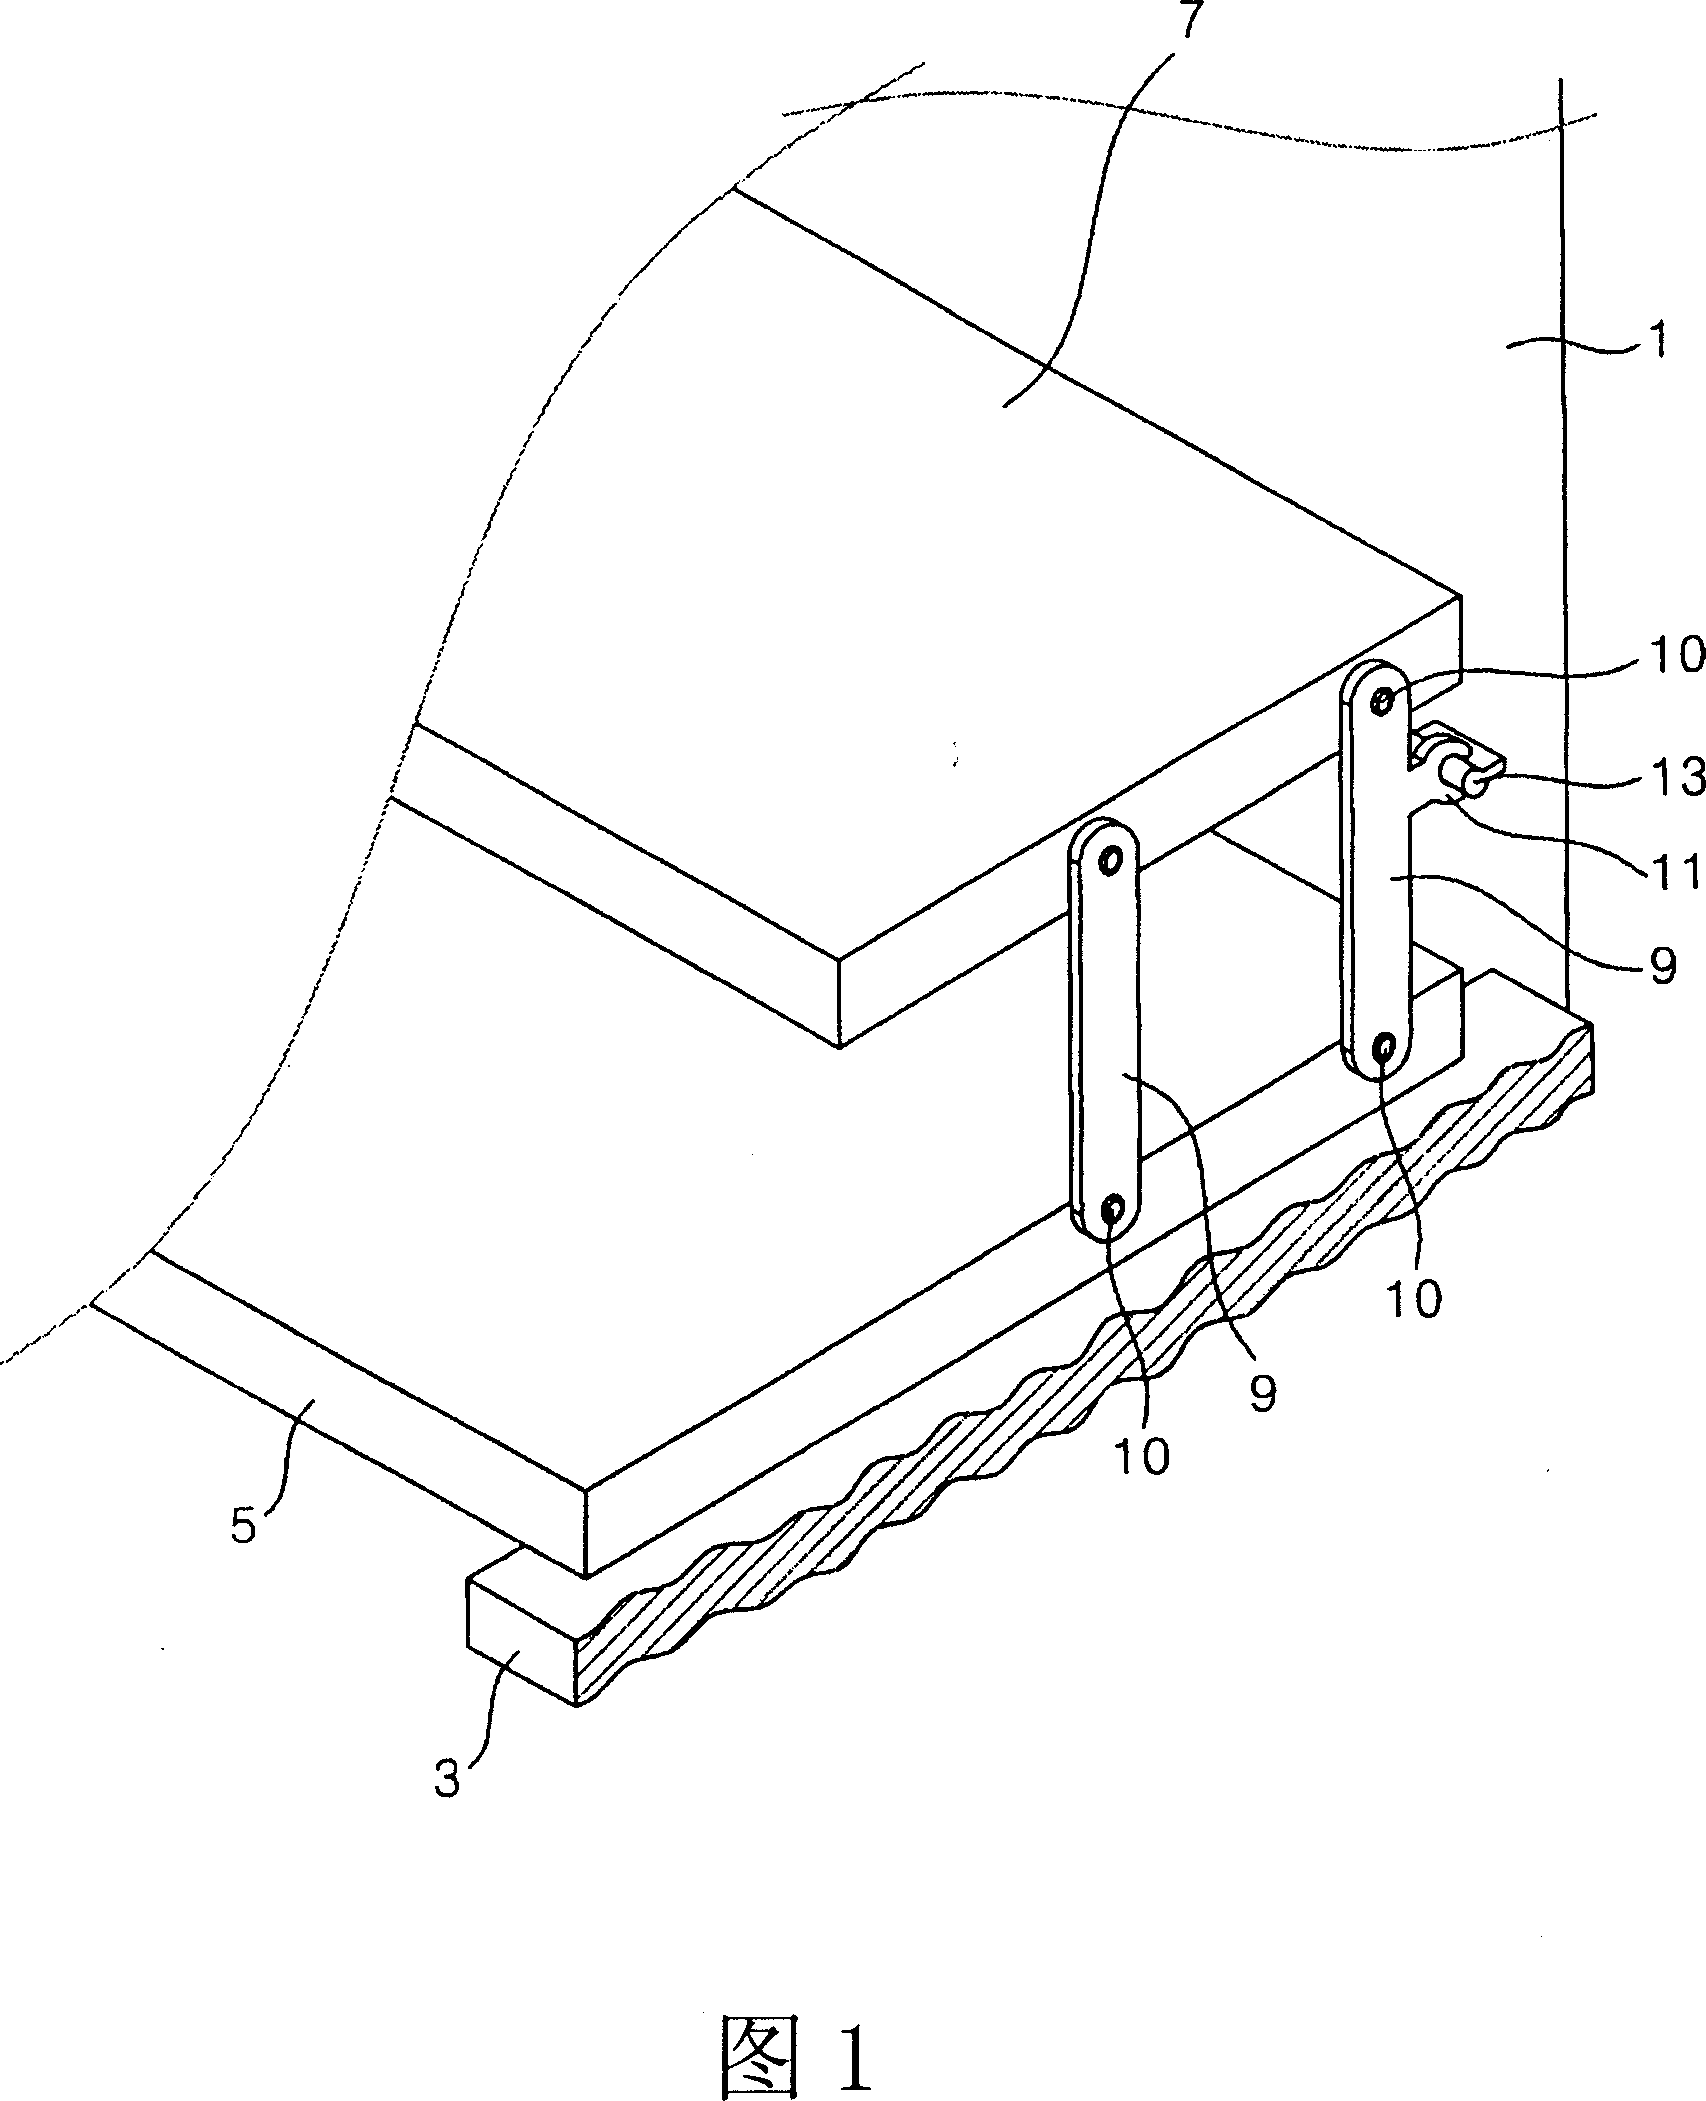 Subsidiary shelf board assembly of refrigerator